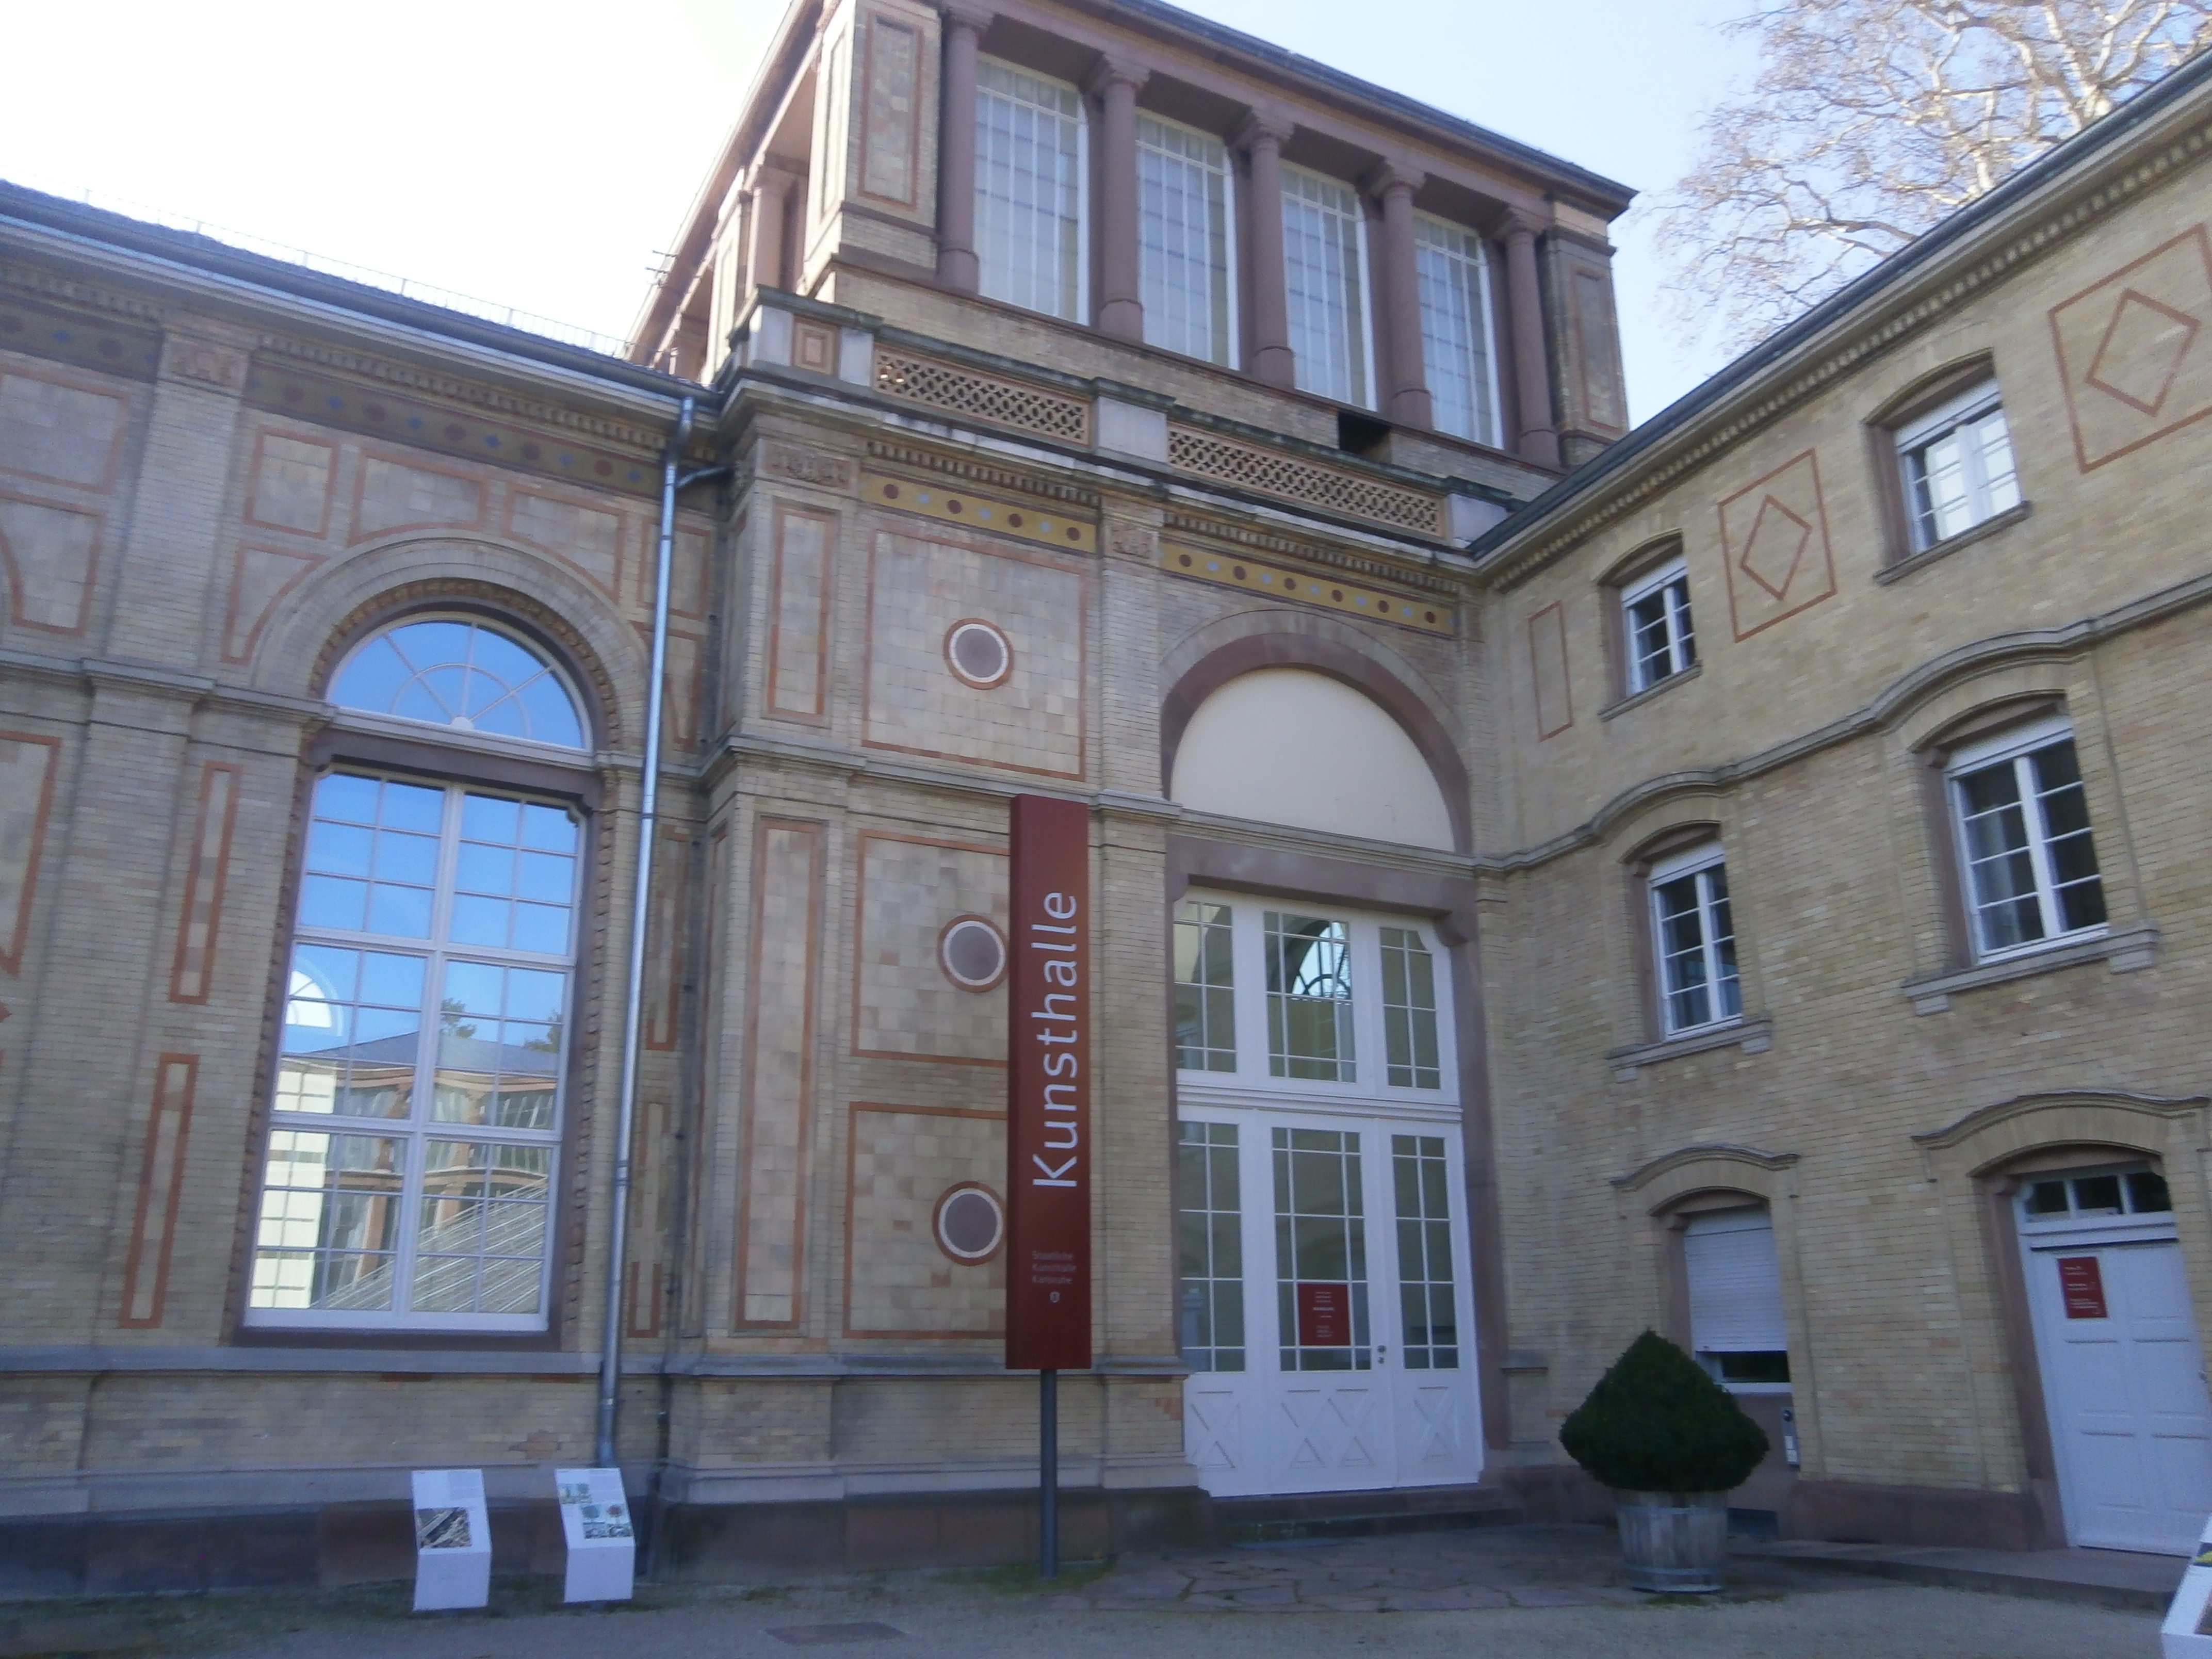 Bild 12 Staatliche Kunsthalle und Orangerie in Karlsruhe